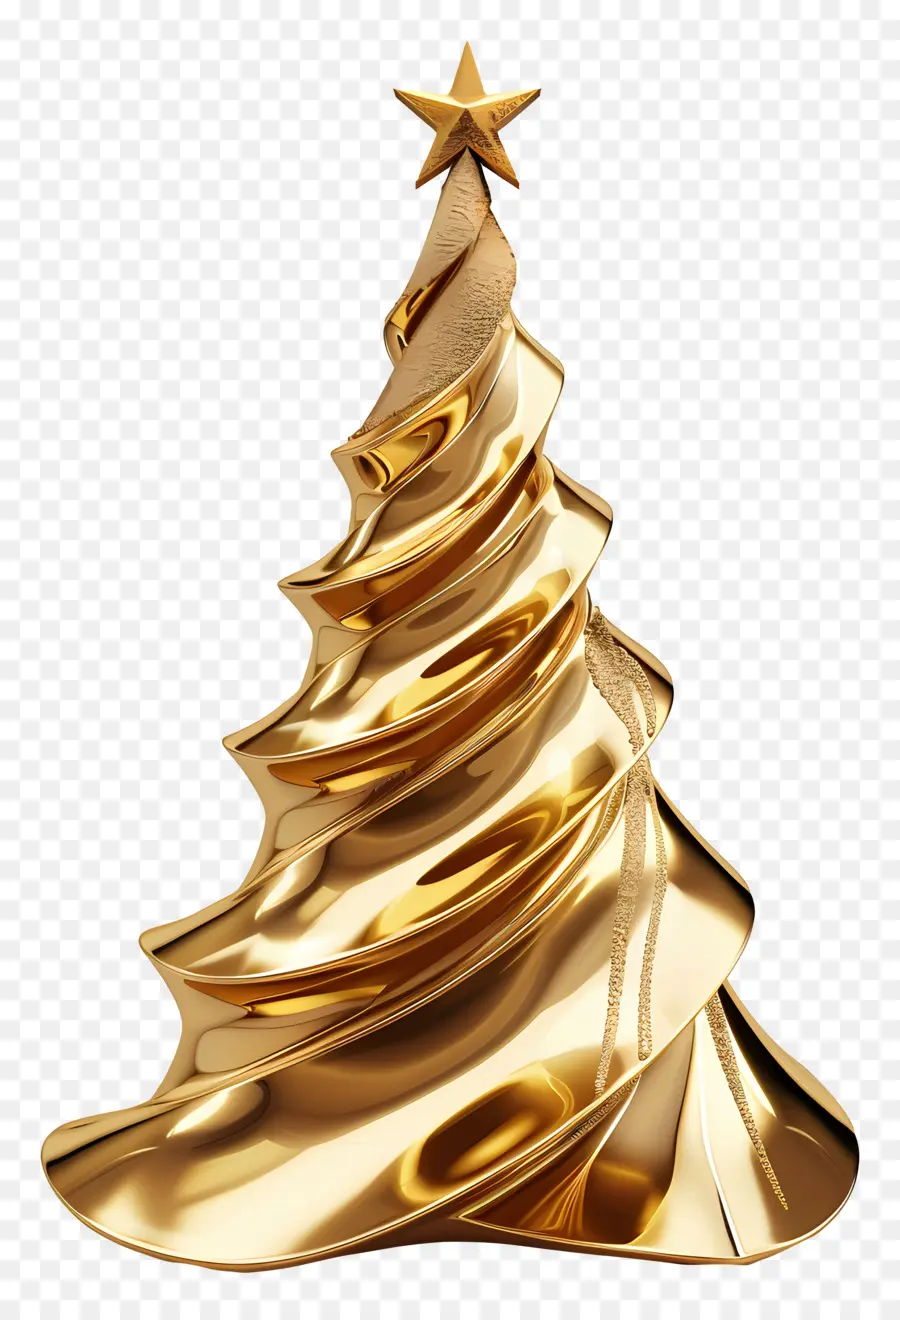 Weihnachtsbaum - Glänzender goldener Weihnachtsbaum mit Stern